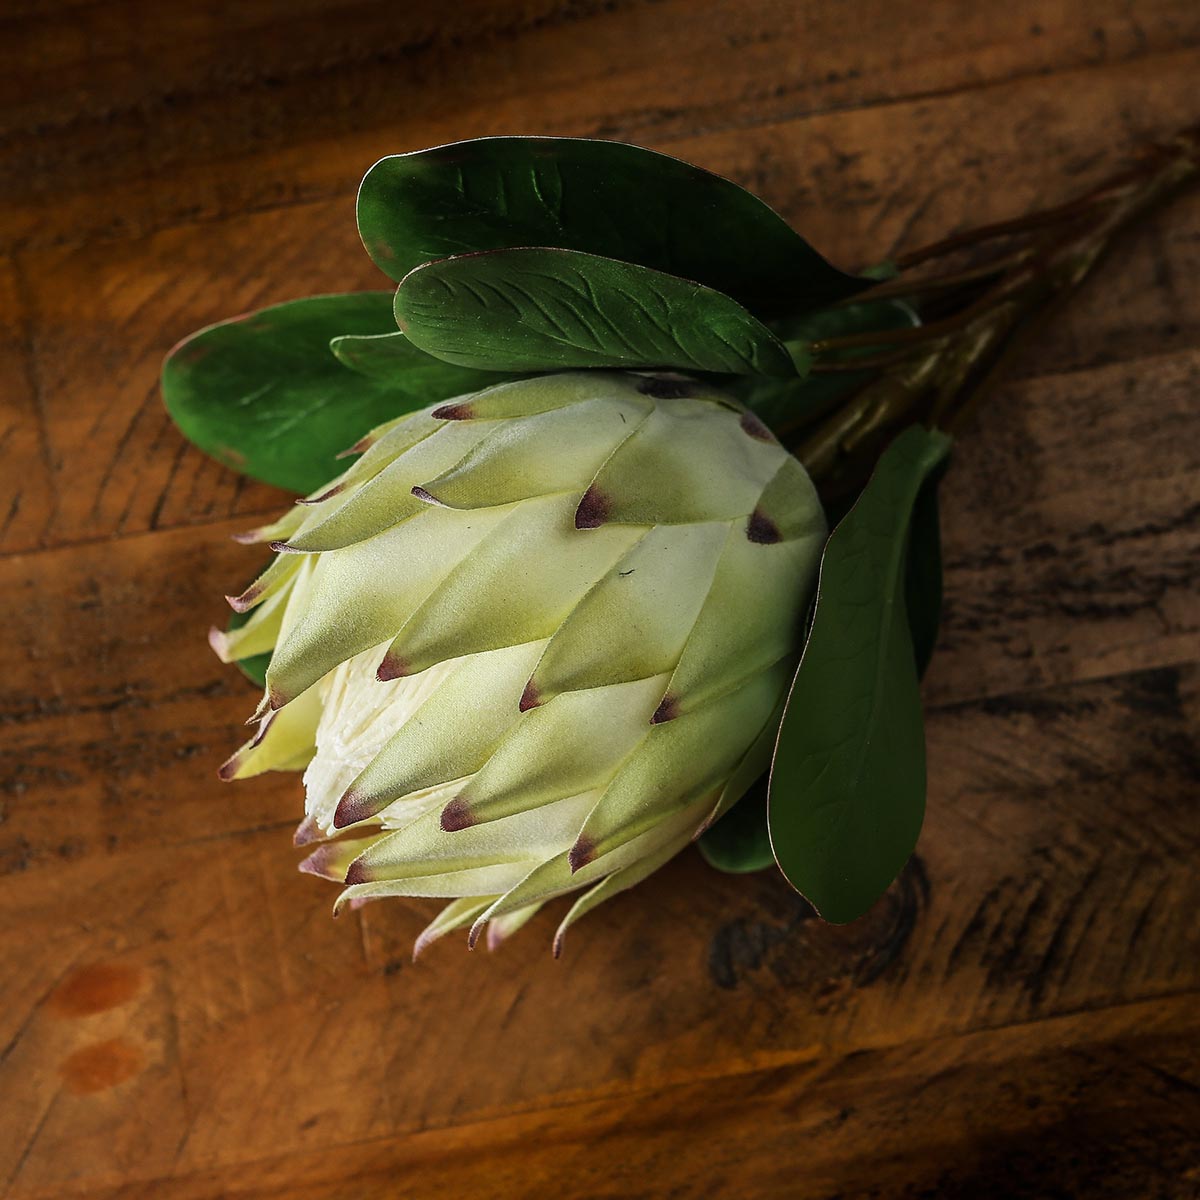 Artificial White Protea Stem – Click Style